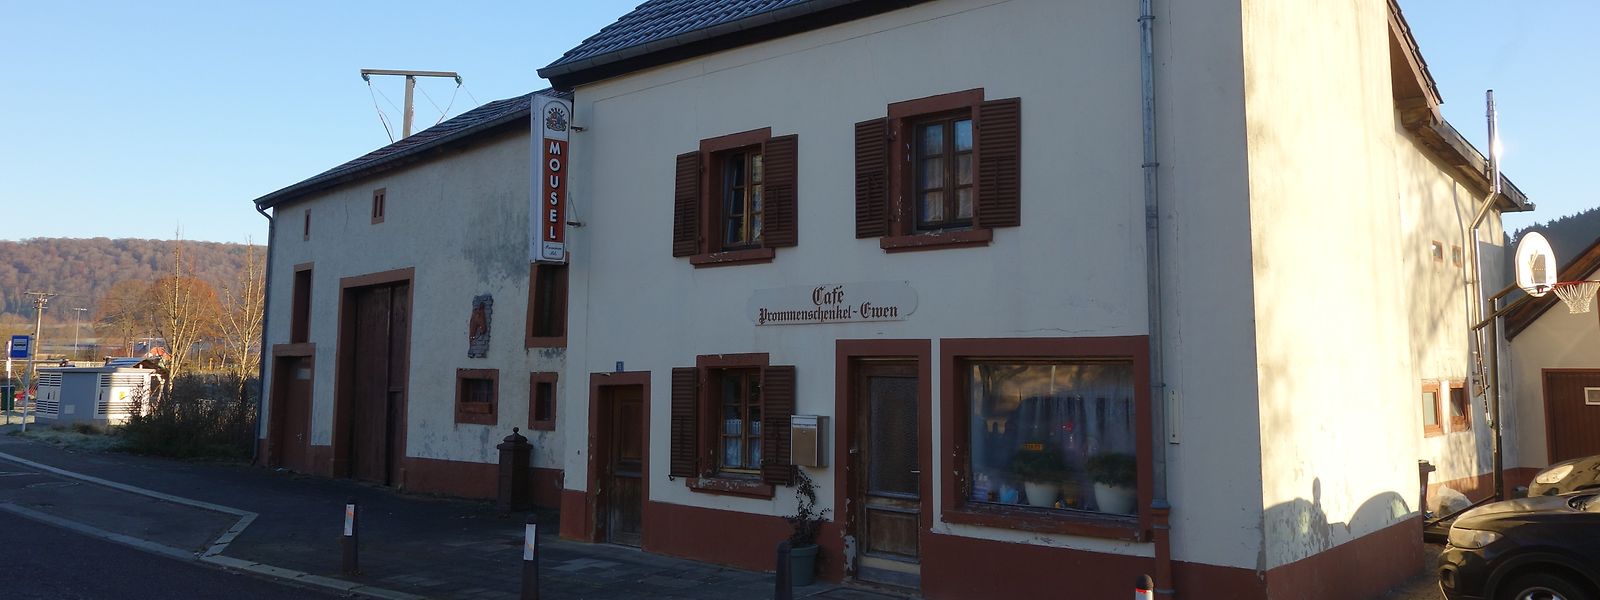 Während Jahrzehnten war das Café der Treffpunkt in Prettingen, in Zukunft soll es das wieder werden.